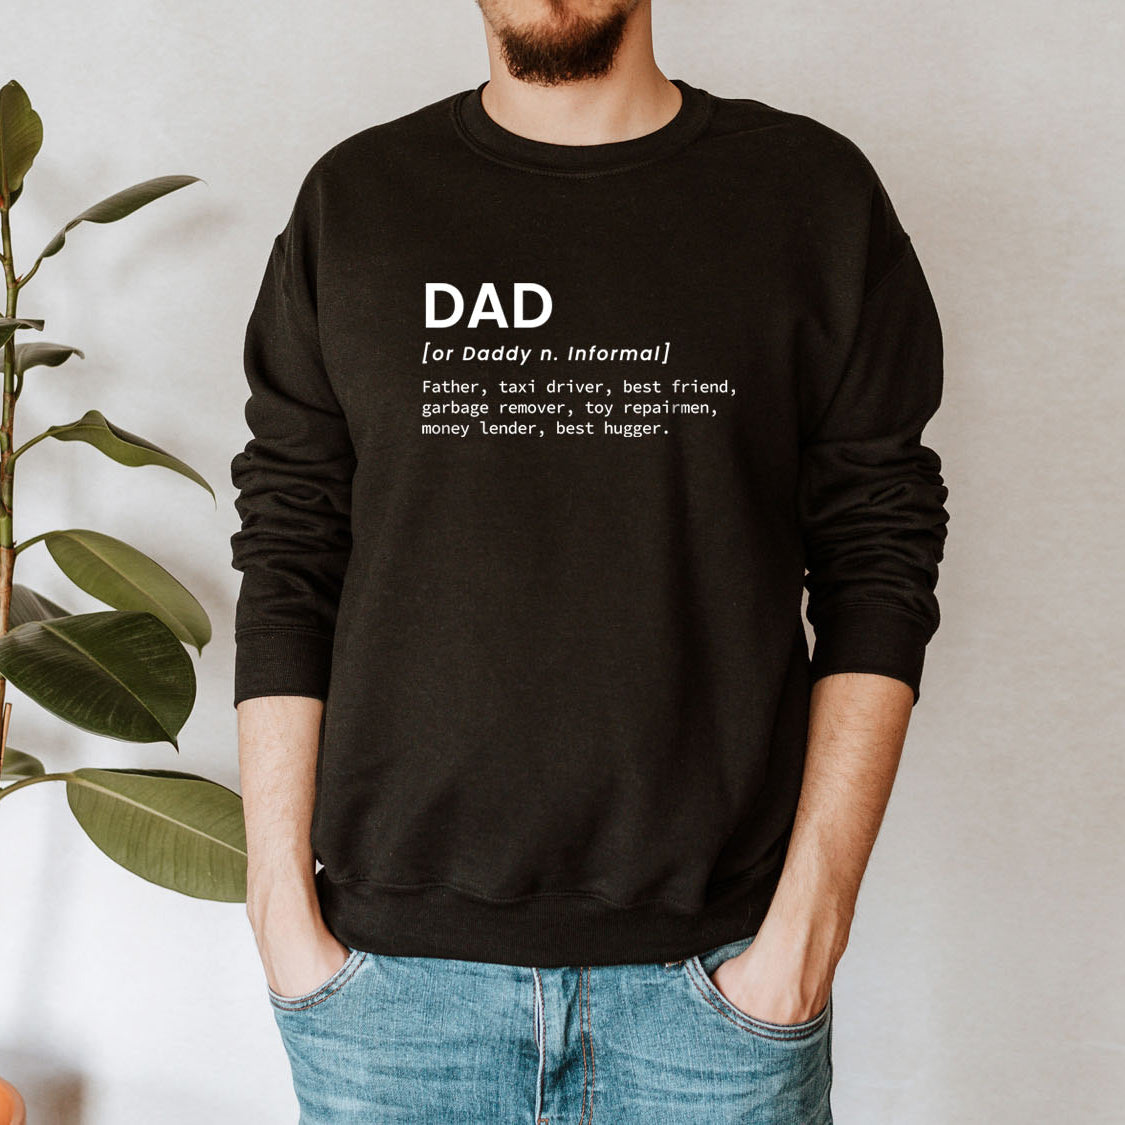 Funny Definition of Dad Sweatshirt - Funny Family Retro Vintage Design Printed Sweatshirt